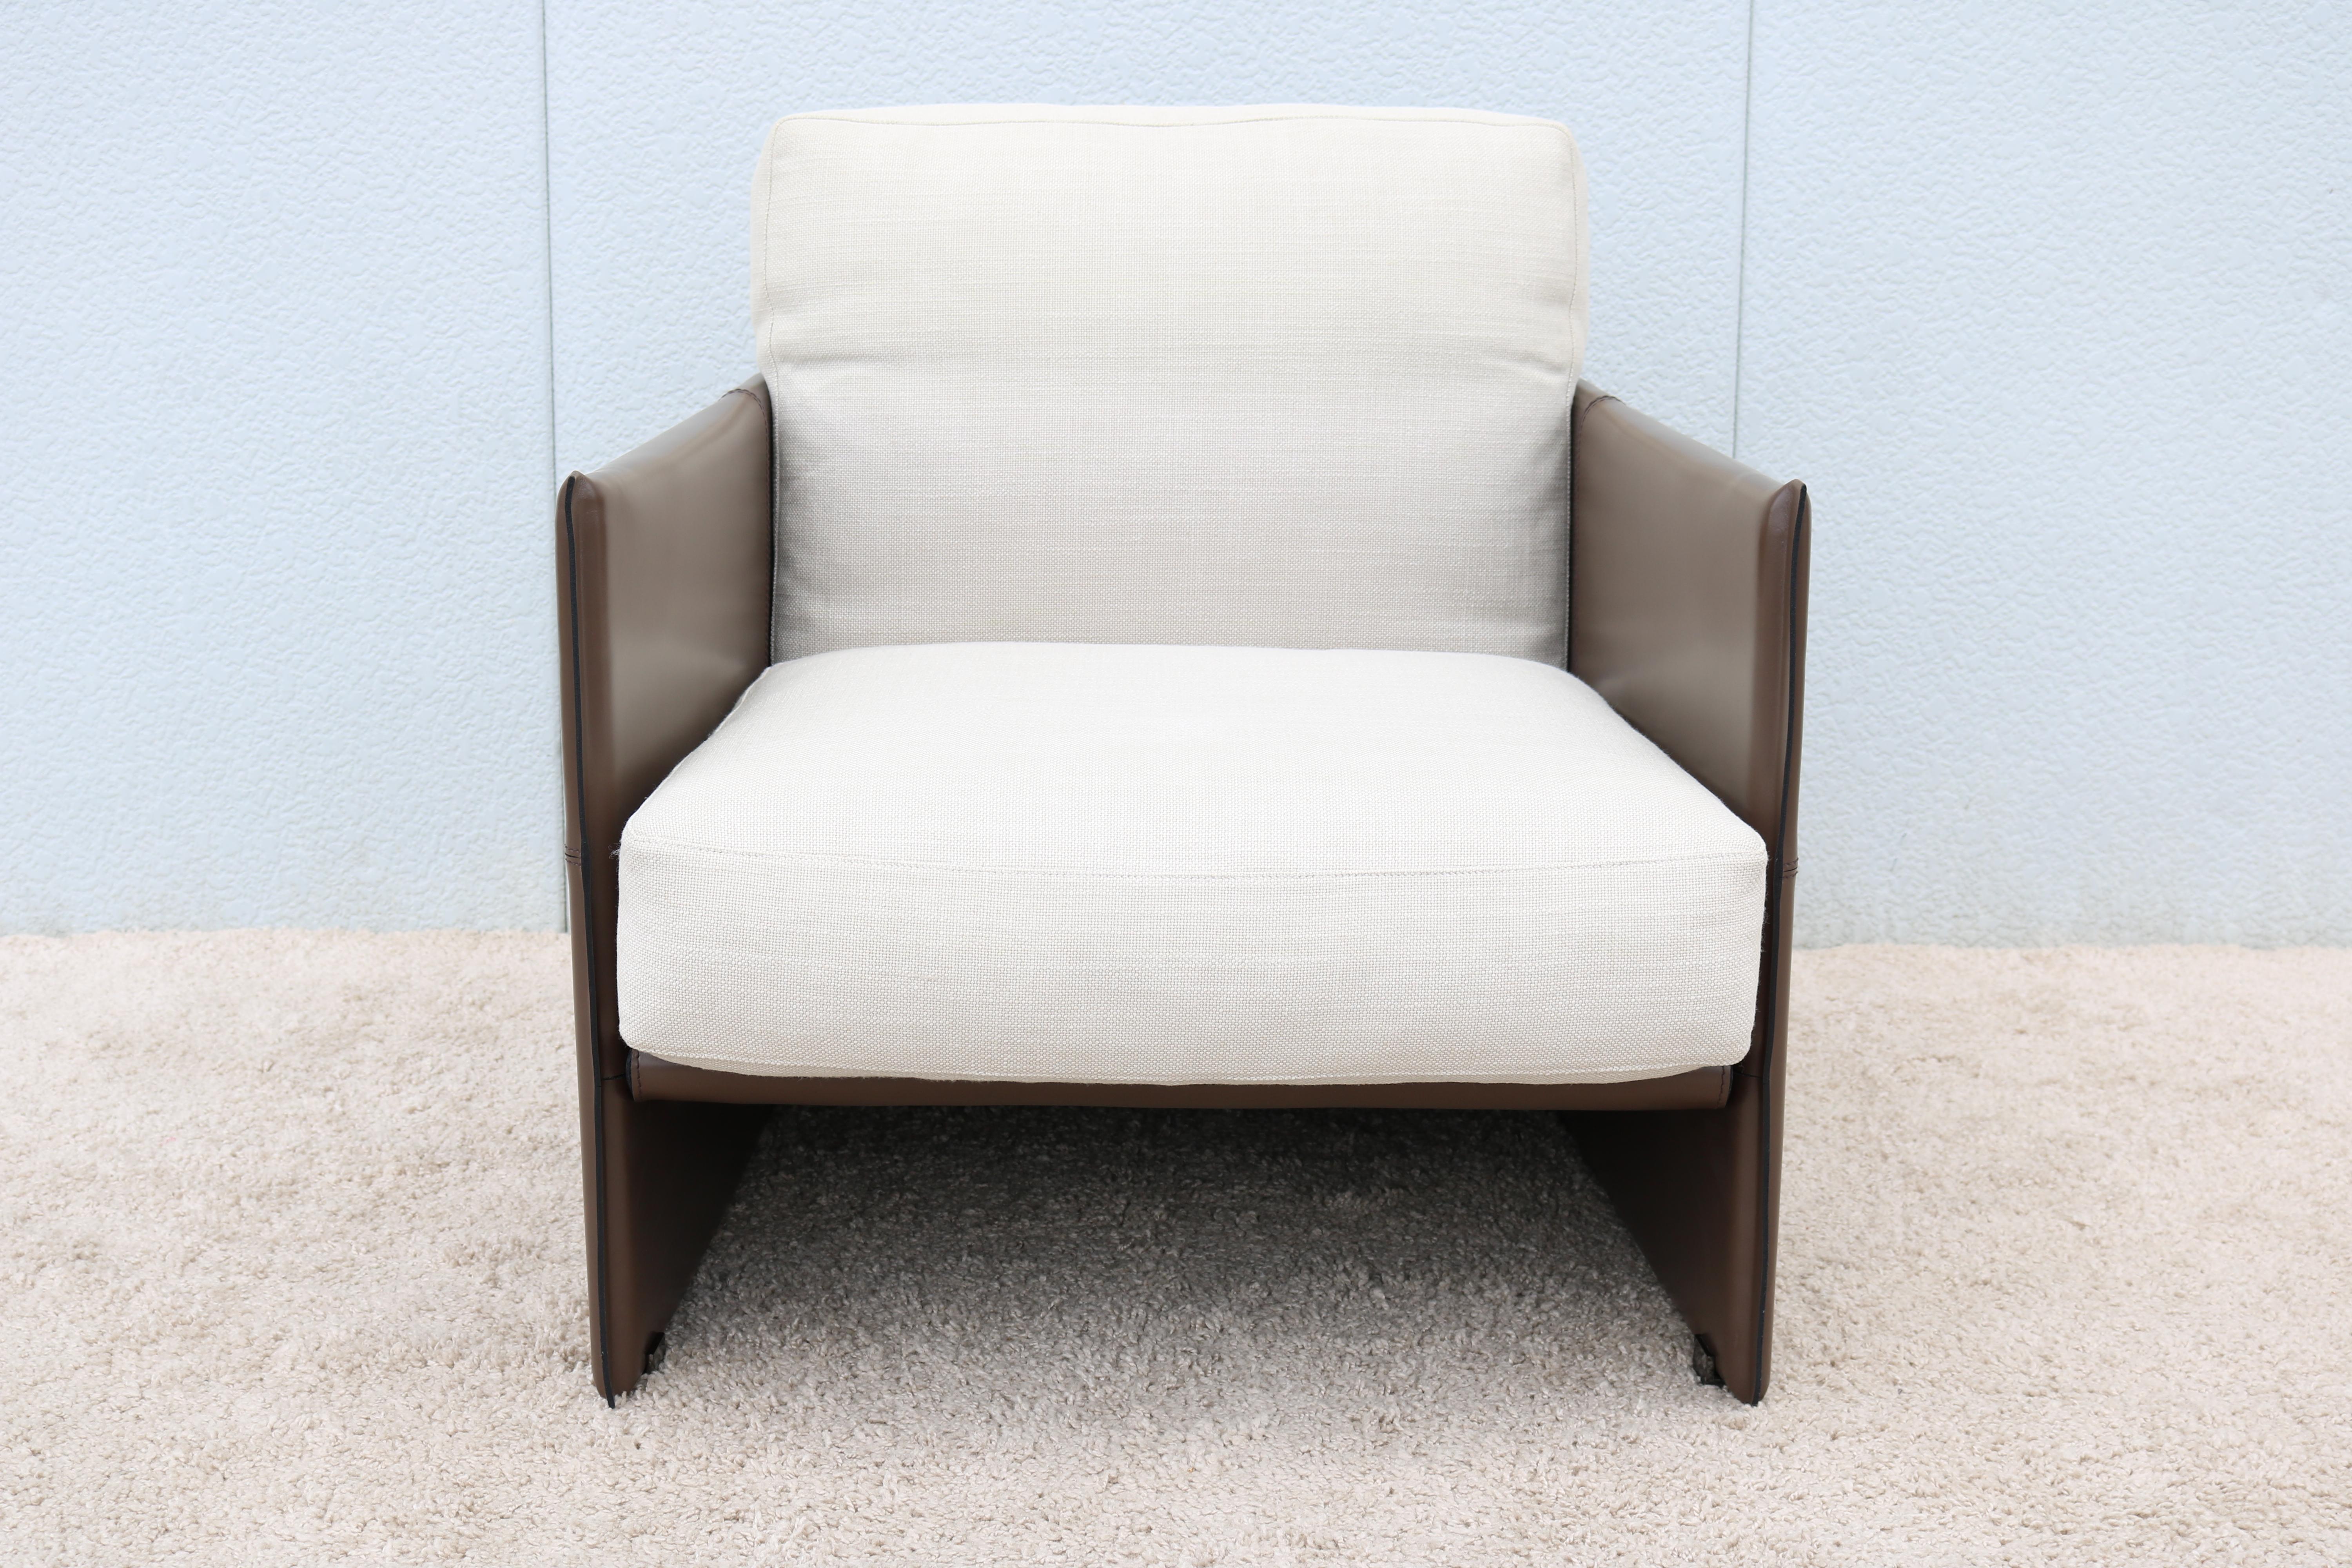 L'élégant fauteuil Bagages faciles est conçu par Rodolfo Dordoni pour le fabricant italien Minotti.
Un fauteuil à la forme carrée et au fort pouvoir esthétique. 
Caractérisé par des lignes strictes et des courbes douces, inspiré par un design pur.